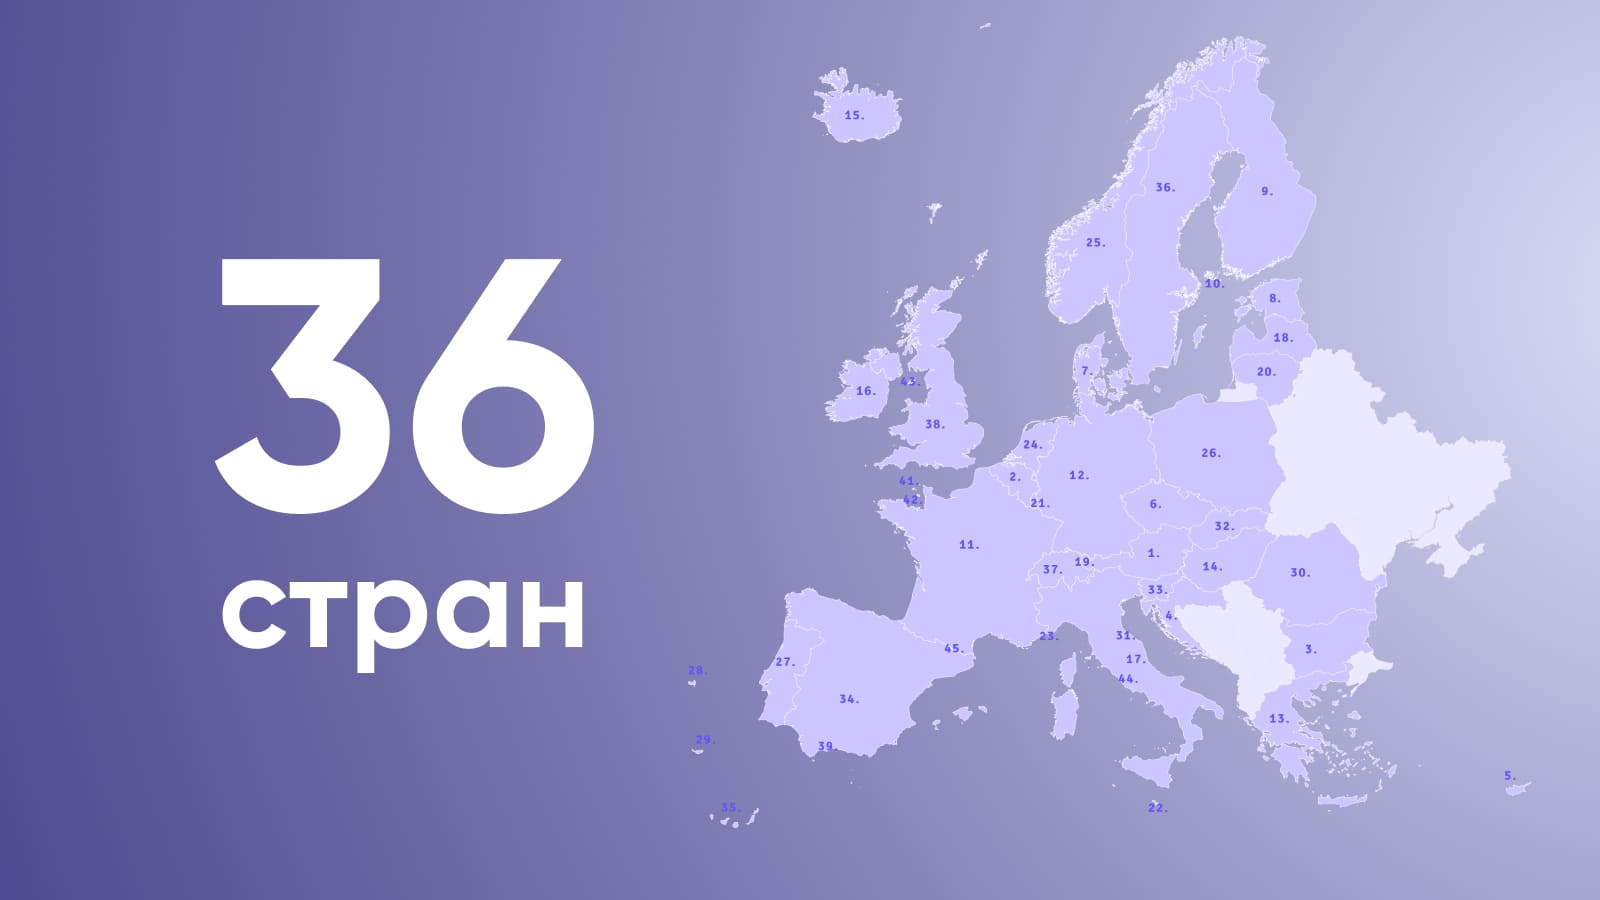 SEPA-переводы можно осуществлять в 36 странах и территориях Европы.